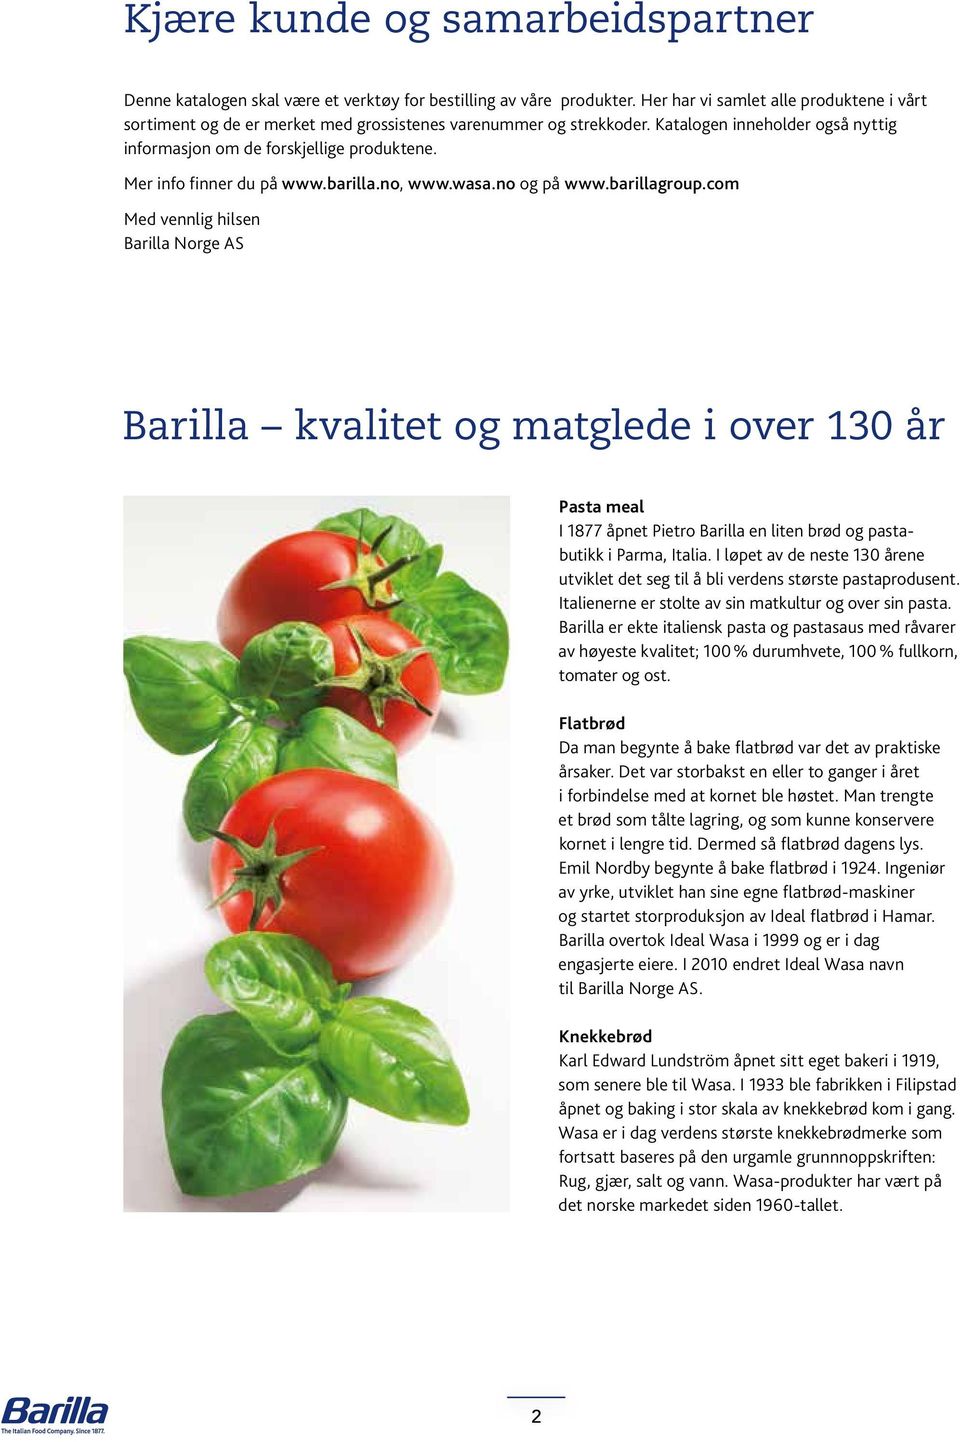 Mer info finner du på www.barilla.no, www.wasa.no og på www.barillagroup.